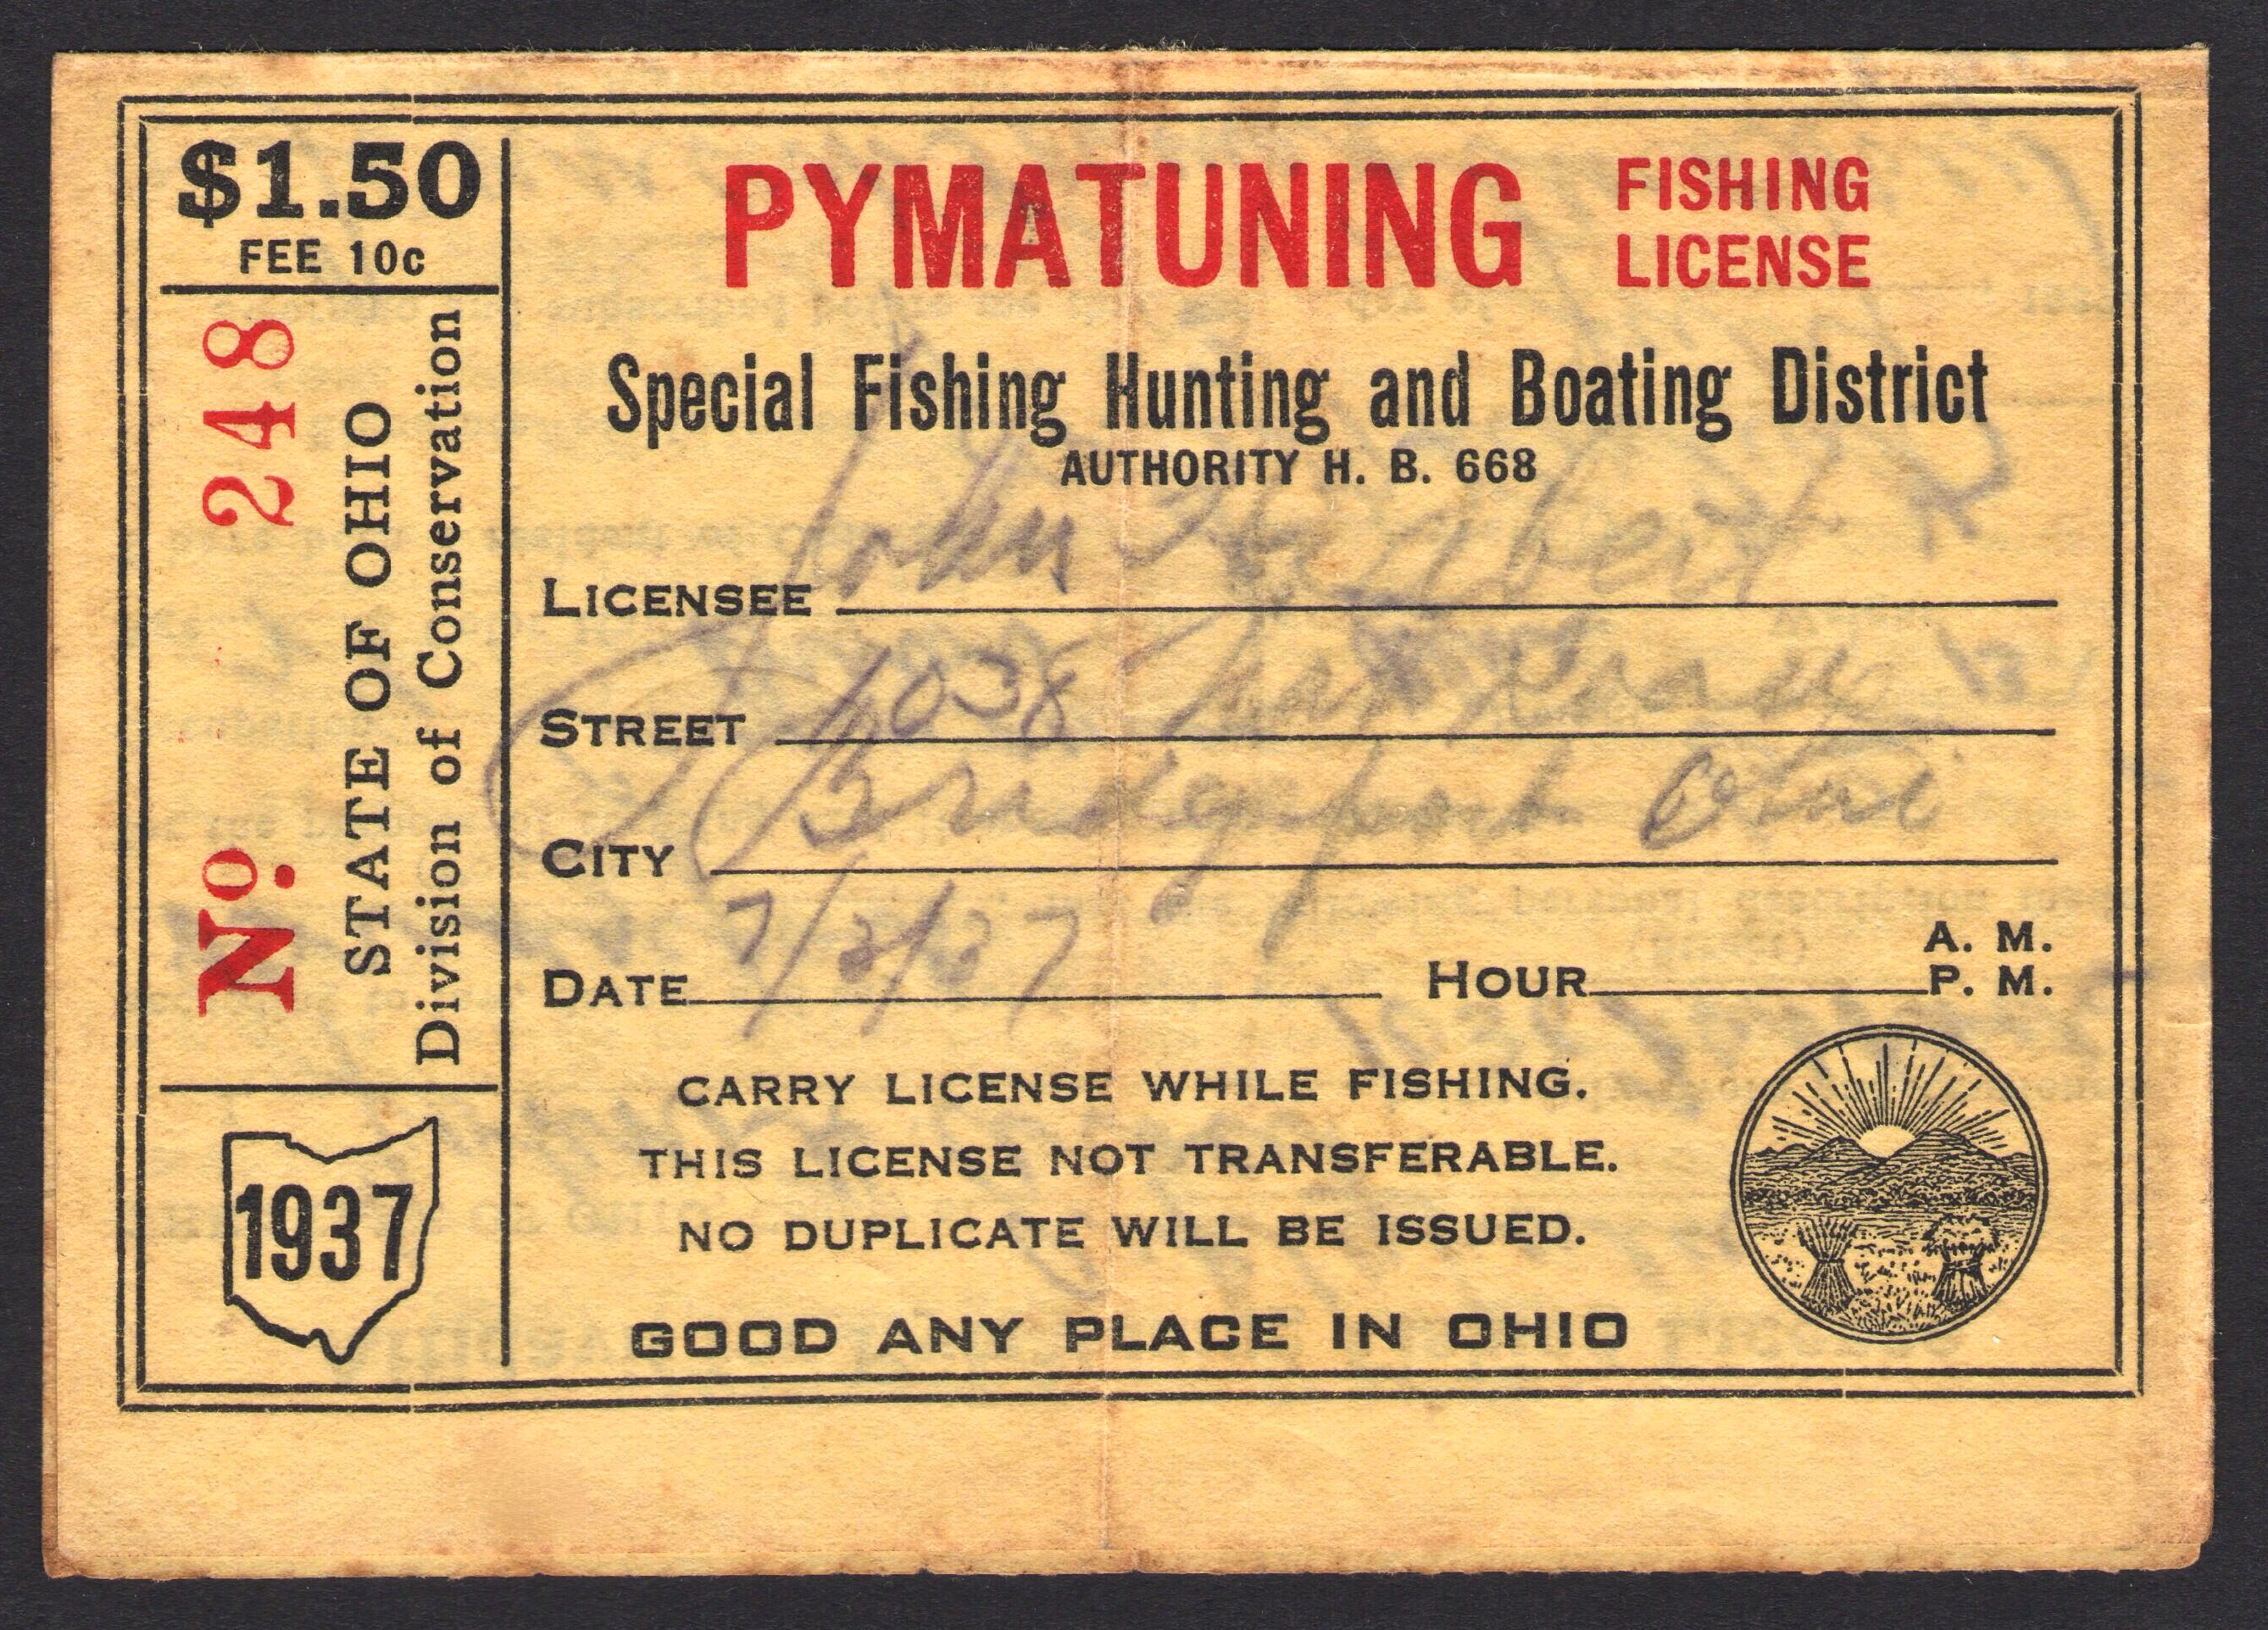 1937 Pymatuning Fishing License